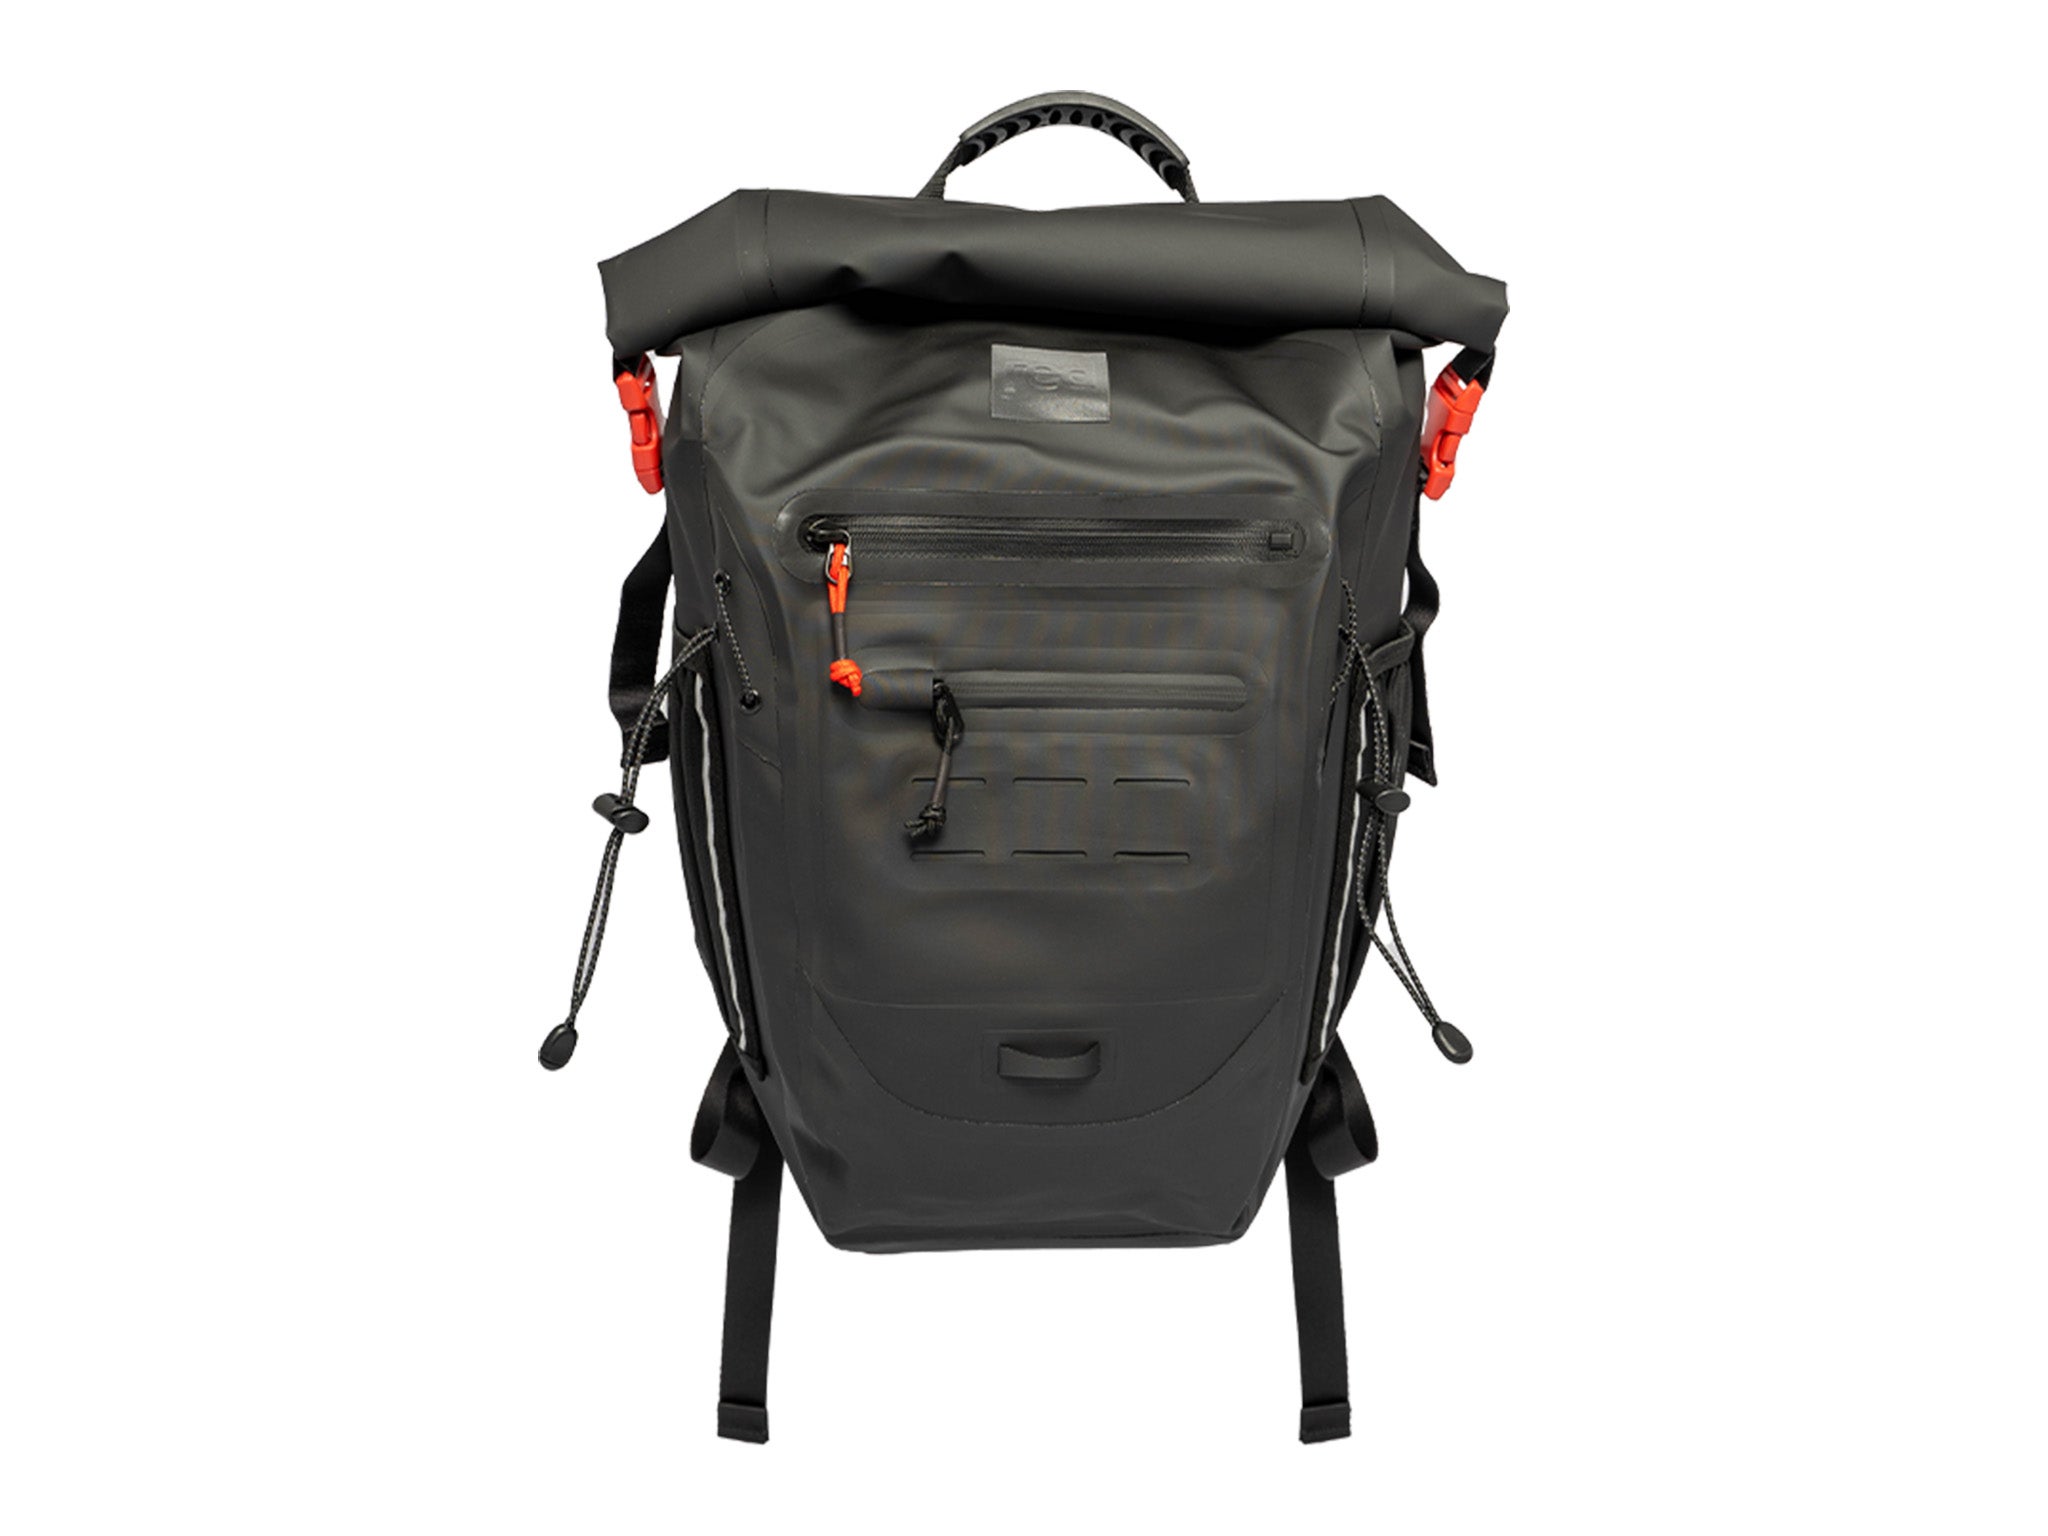 Red adventure waterproof backpack